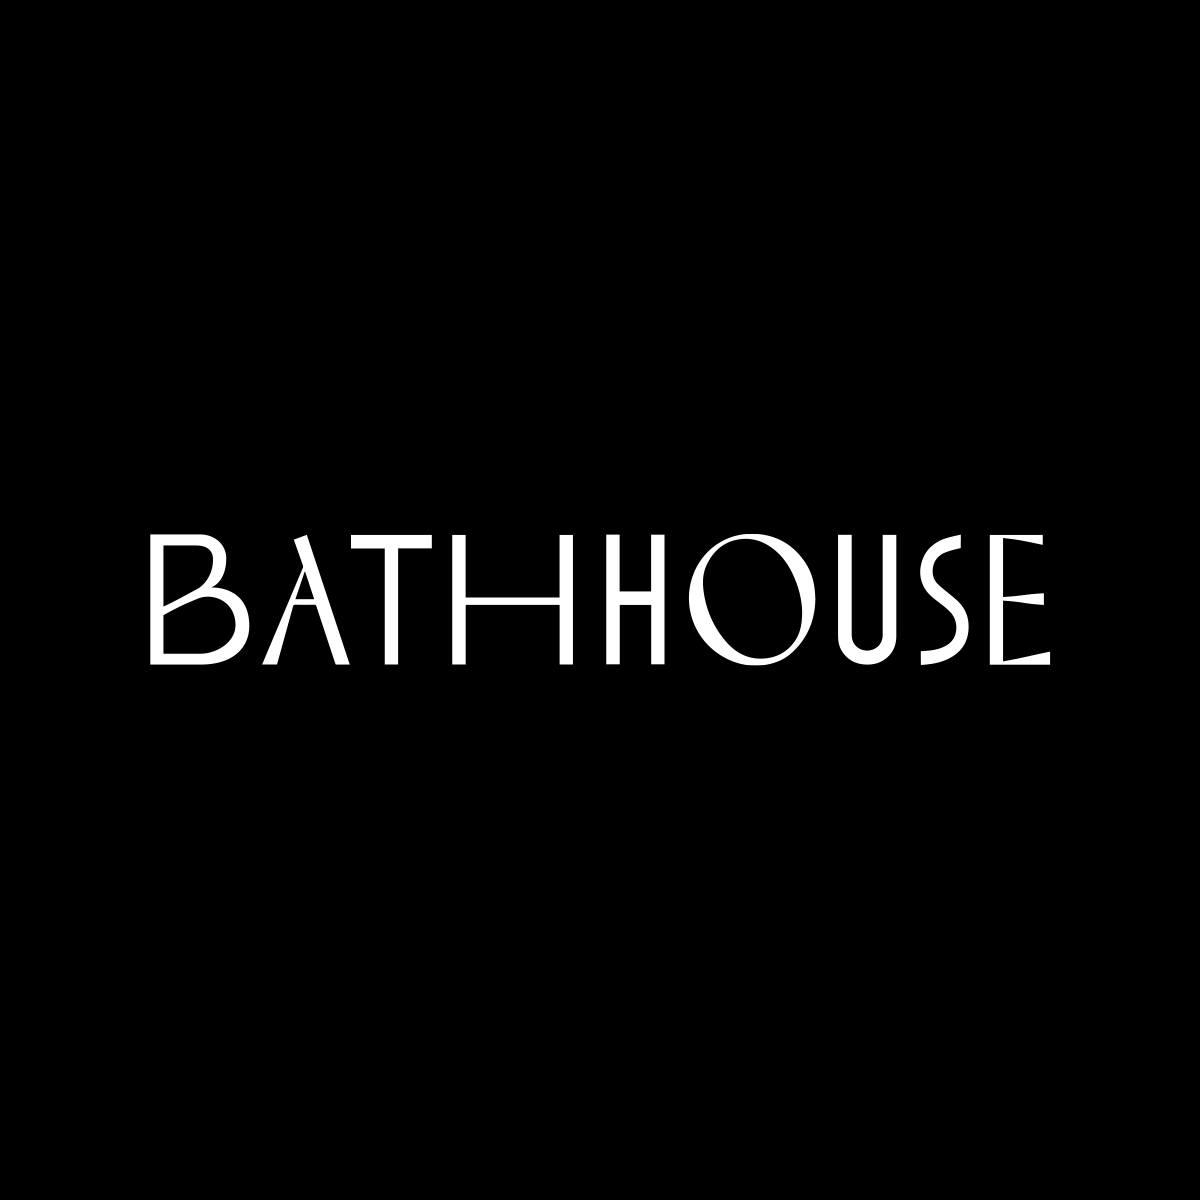 Bathhouse's images